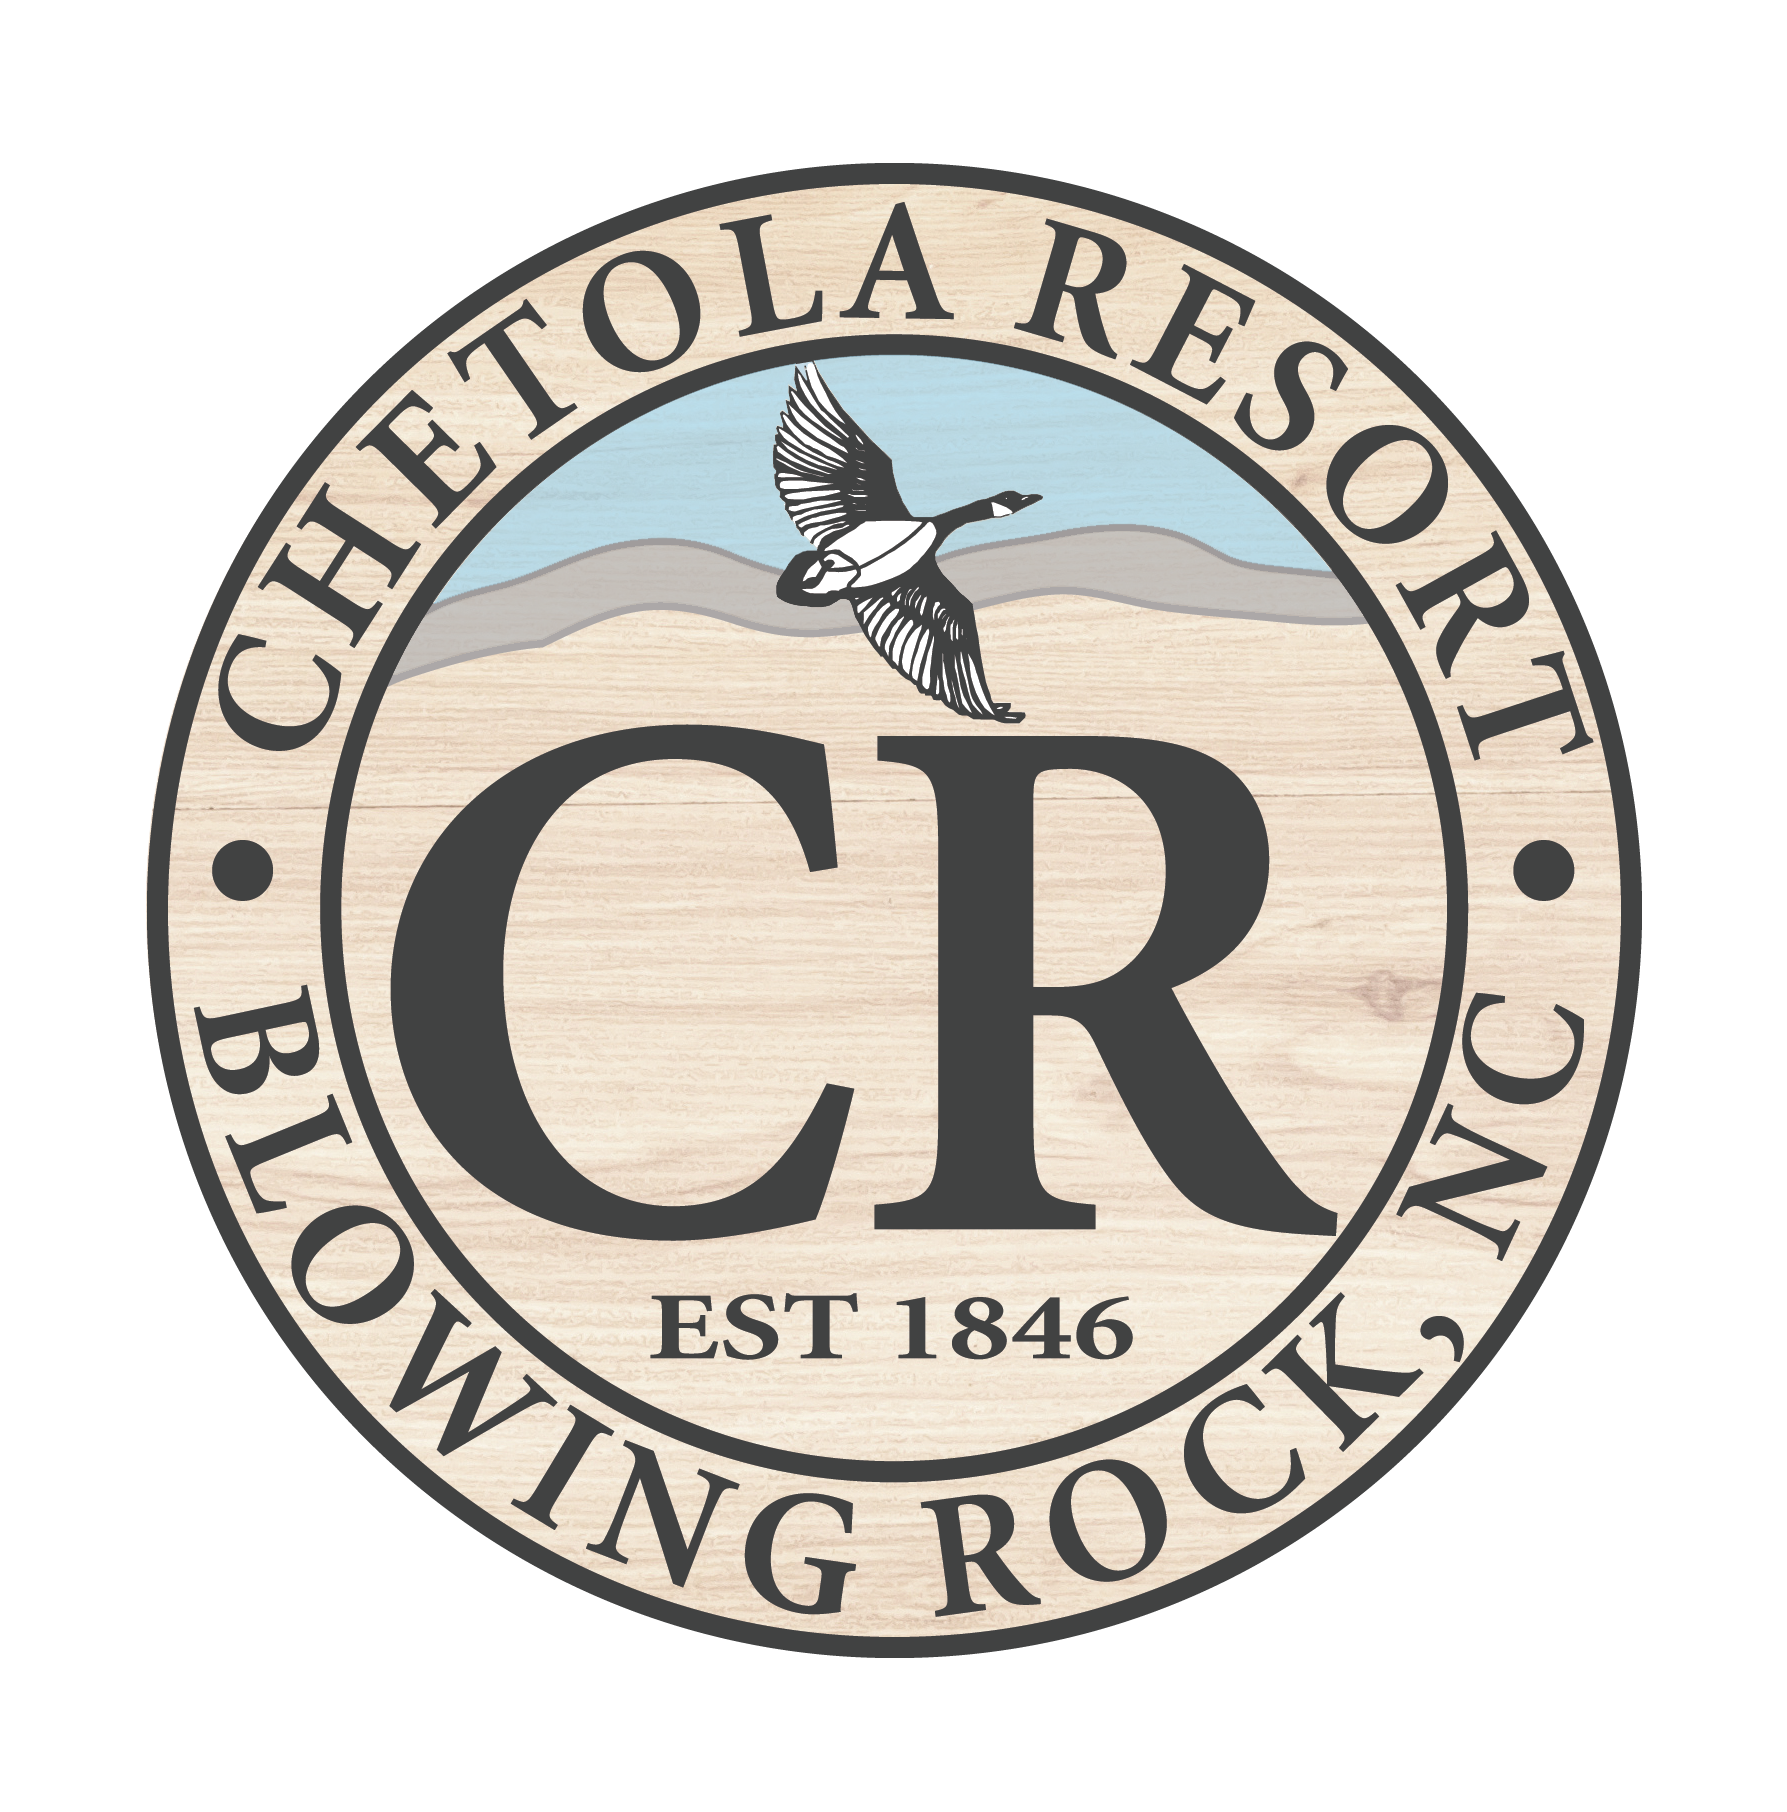 Chetola Resort at Blowing Rock